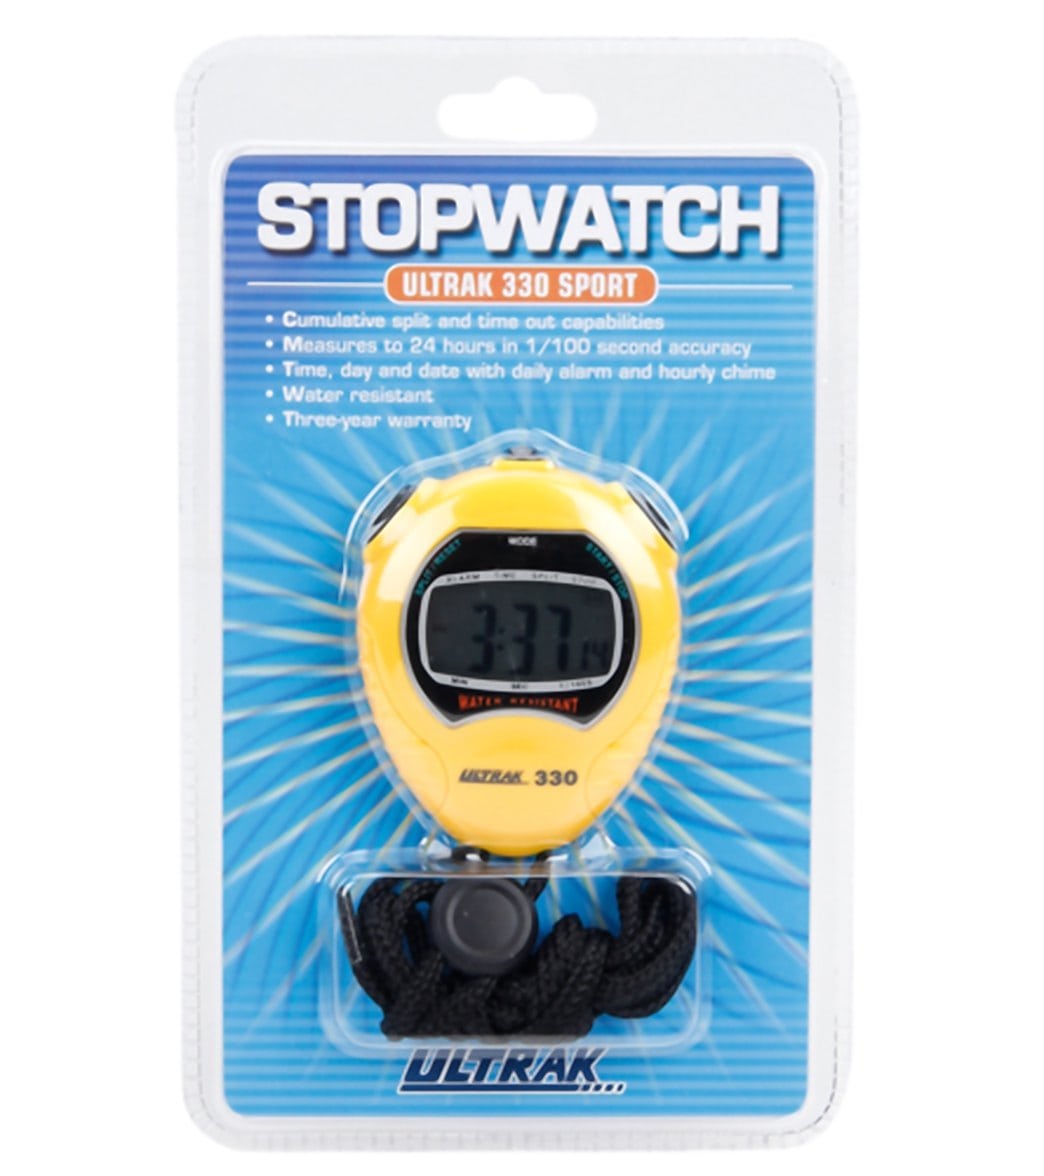 Ultrak 330 Jumbo Display Stopwatch